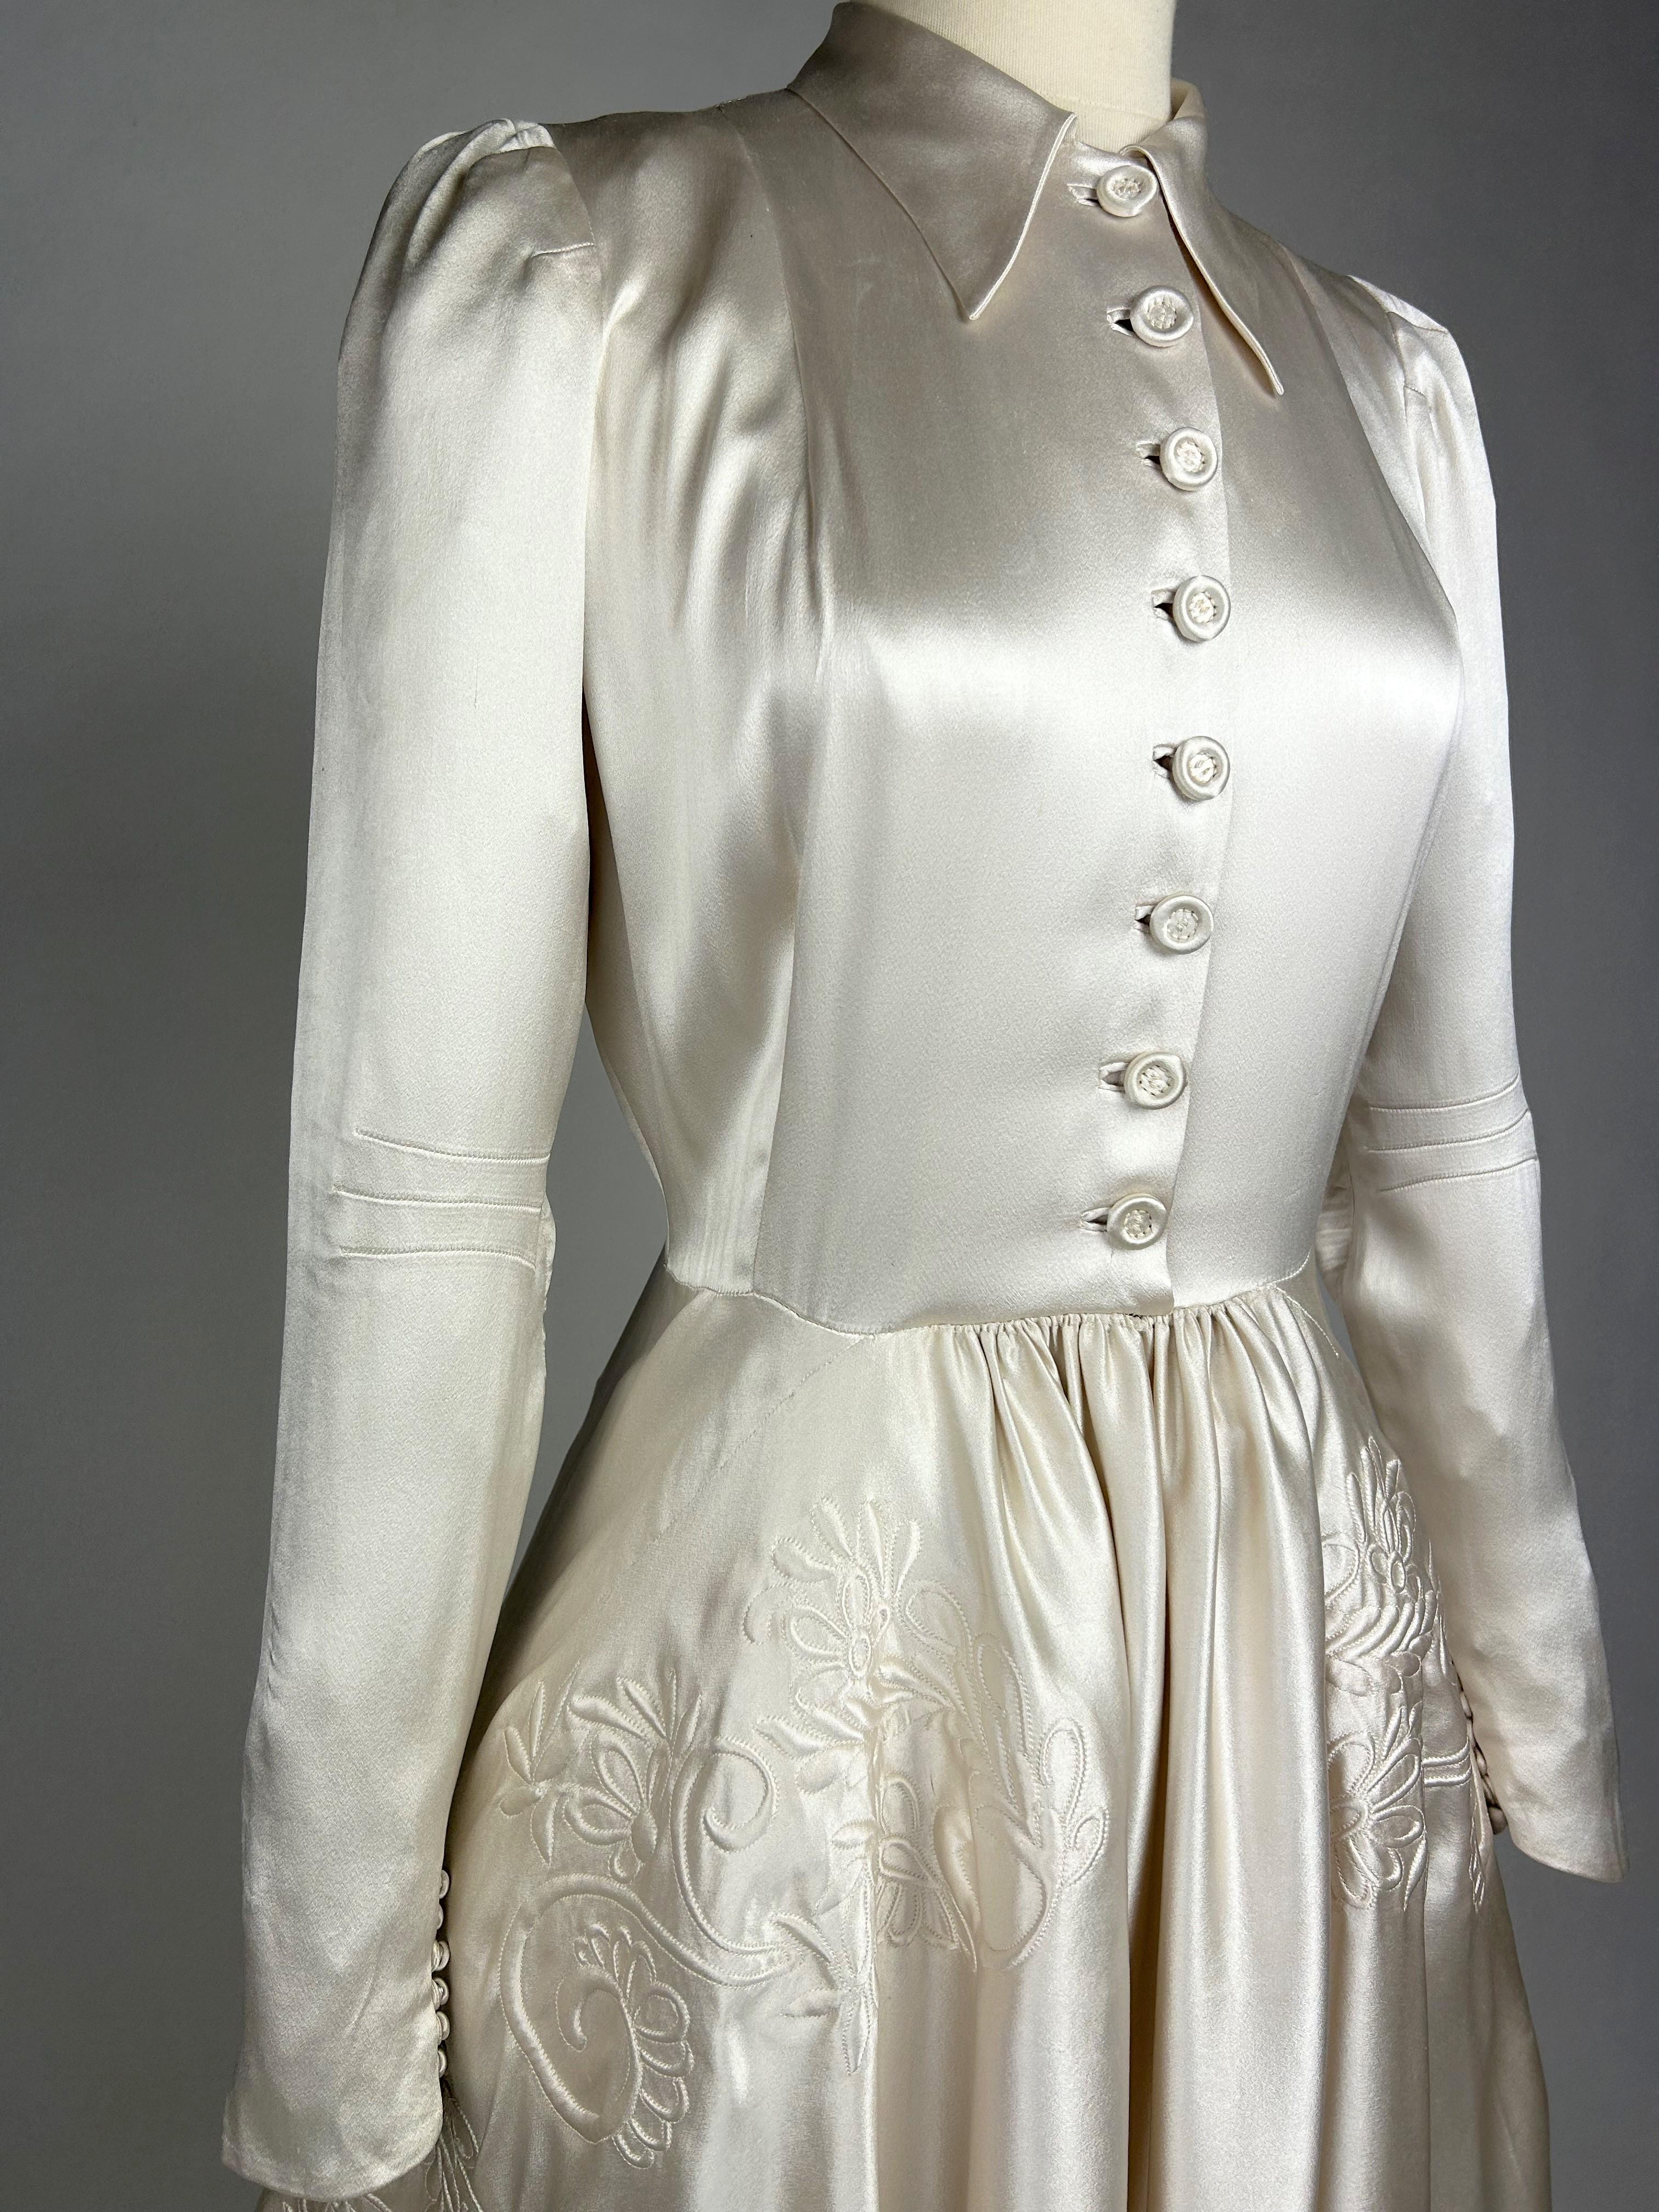 Vers 1938-1942

France

Robe de mariée avec longue traîne en satin Duchesse de couleur champagne. Coupe fluide avec un chemisier à bretelles au col rabattu, des manches longues à pinces et un double boutonnage devant et derrière. Le dos est prolongé